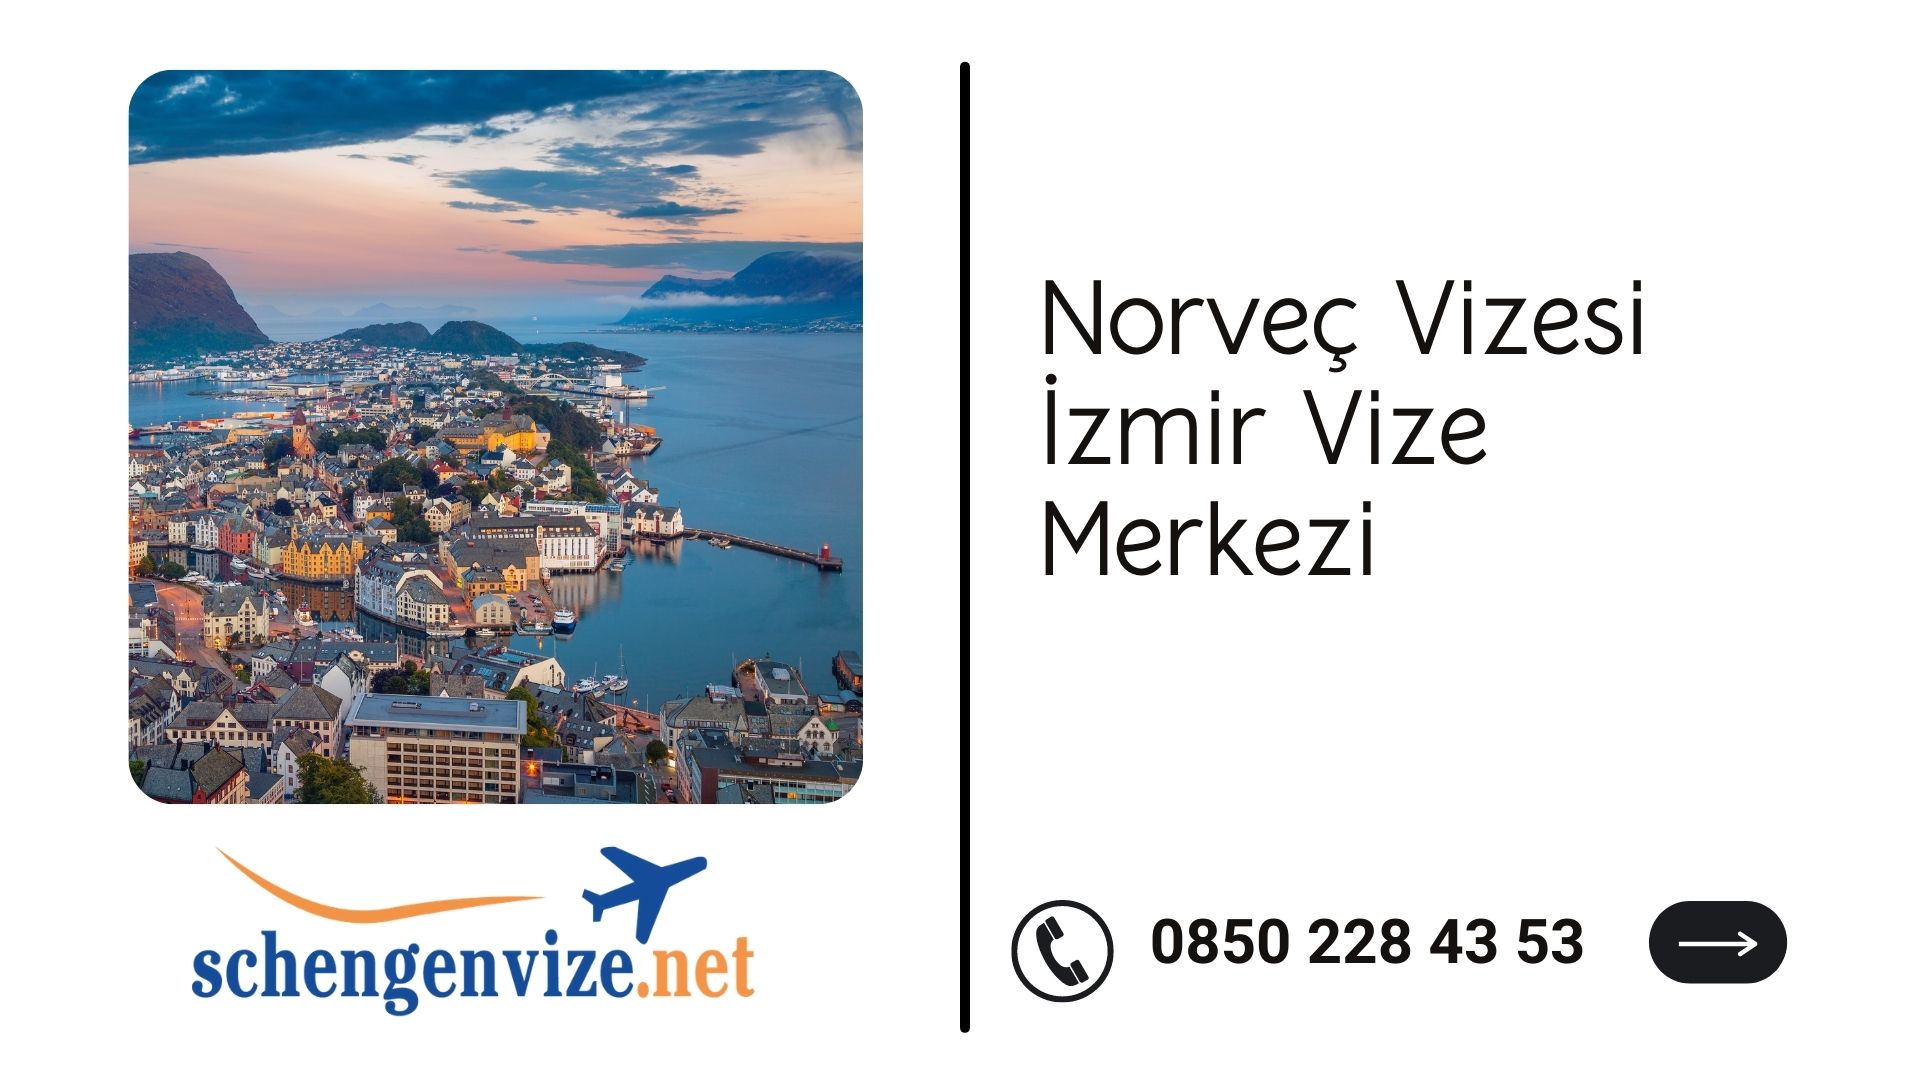 Norveç Vizesi İzmir Vize Merkezi